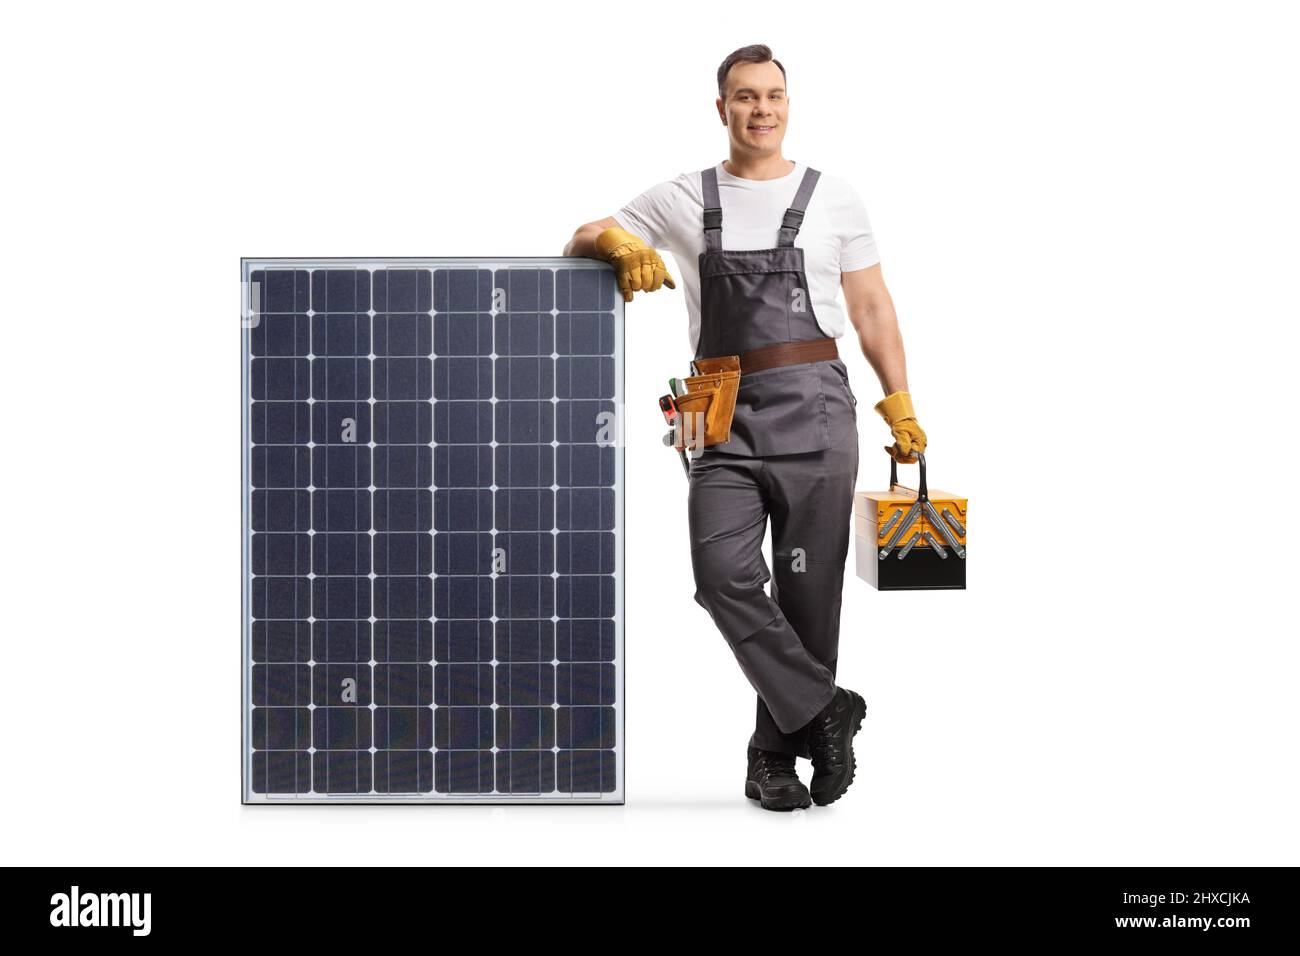 Il riparatore si appoggia su un modulo fotovoltaico per un'energia solare sostenibile isolata su sfondo bianco Foto Stock